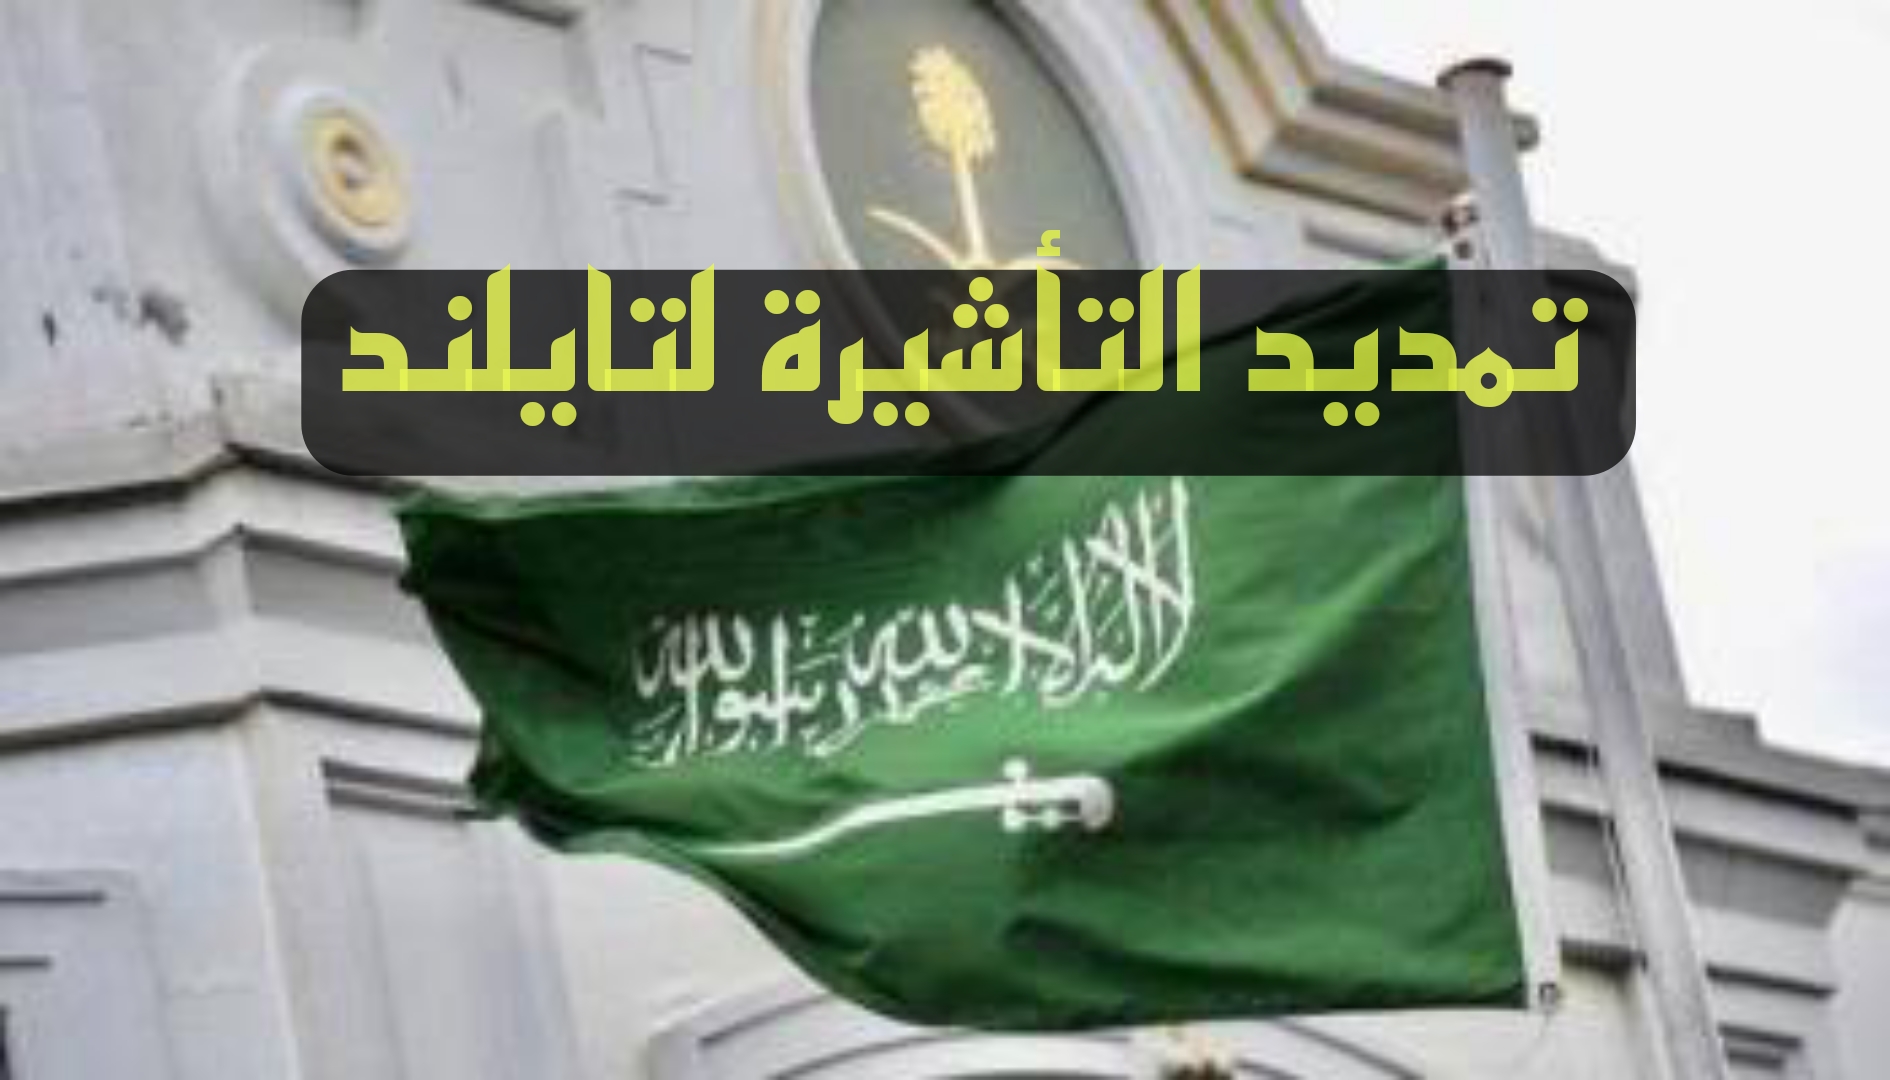 سفارة السعودية في تايلند توضح تمديد فترة الإقامة للسعوديين في تايلند إلى 45